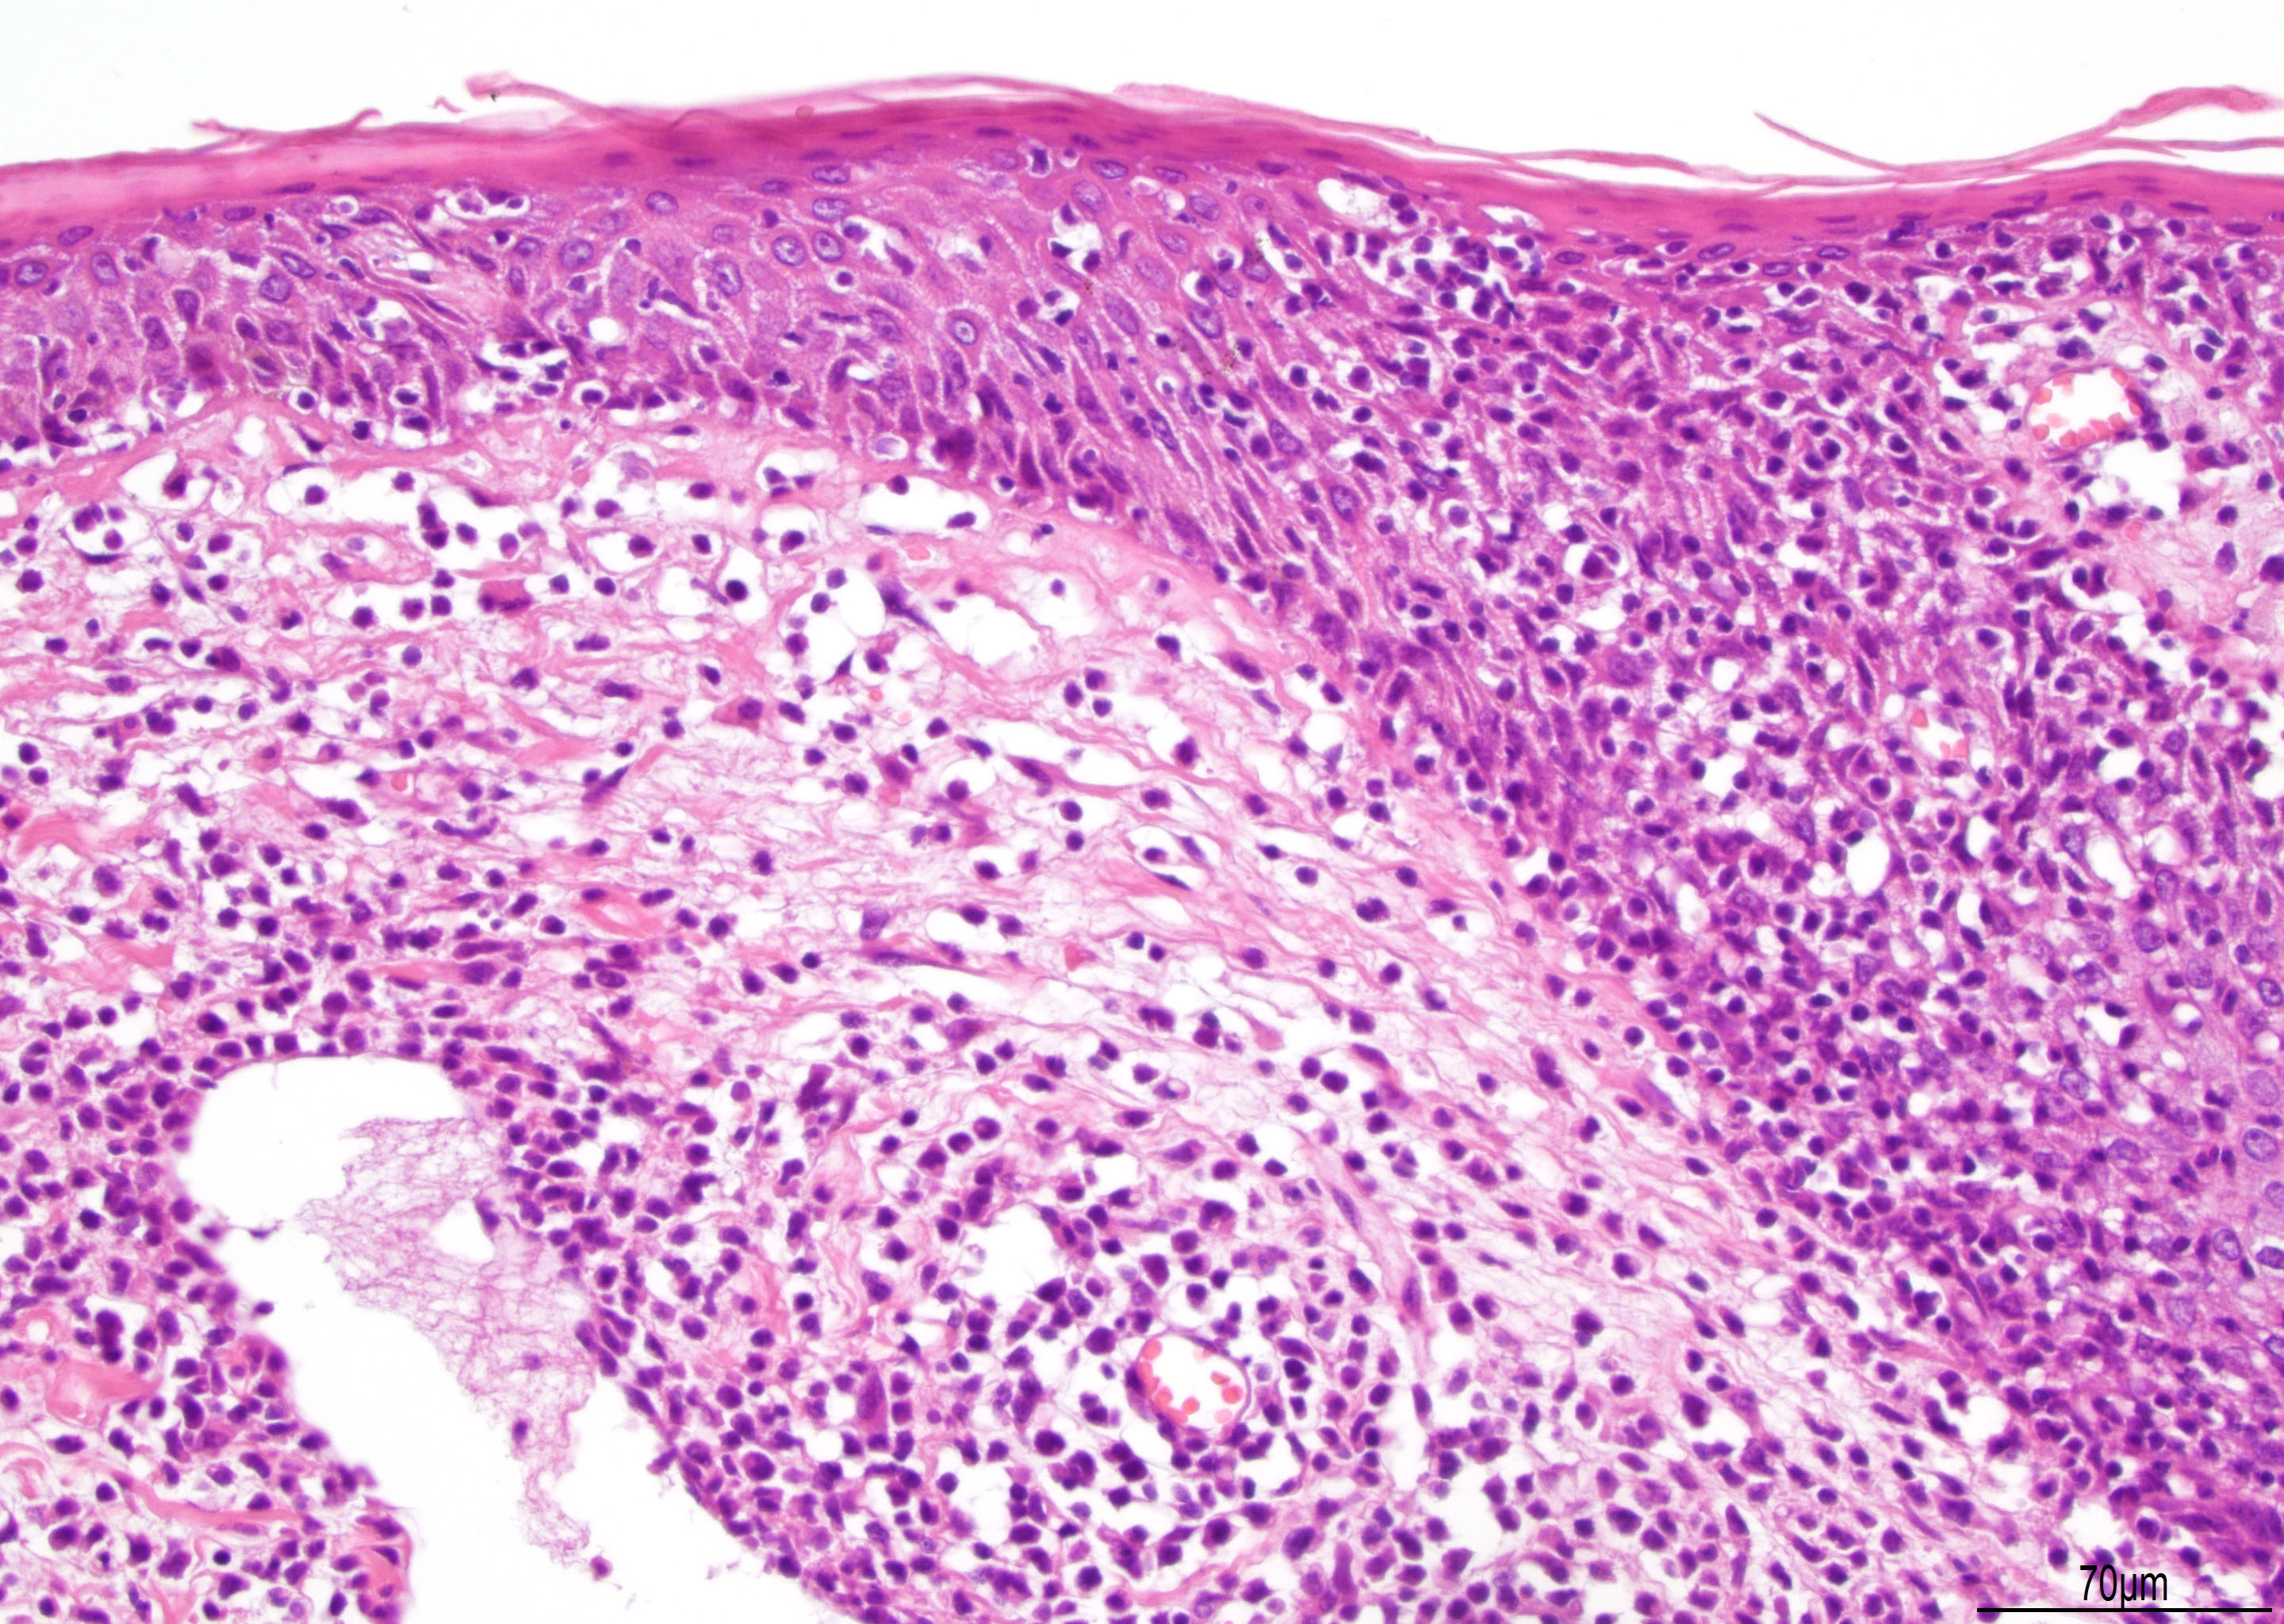 lymphoid papillomatosis pathology outlines